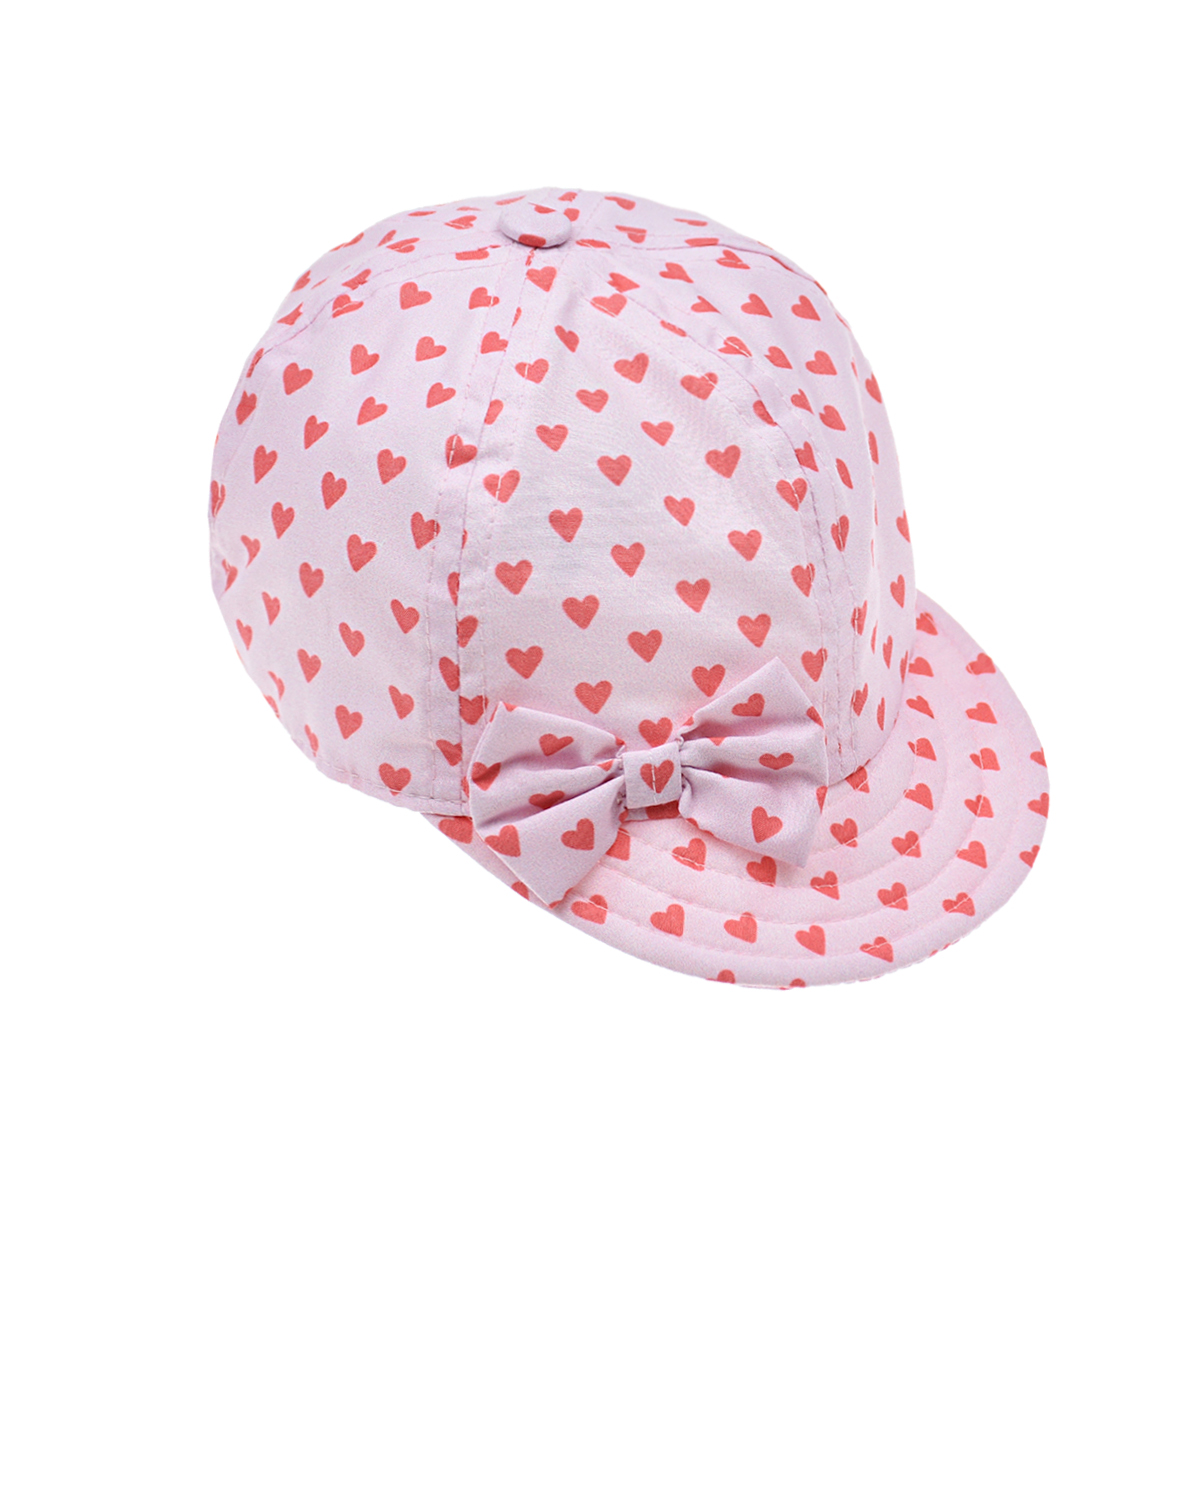 Розовая кепка с сердечками Catya детская, размер 48, цвет розовый - фото 1